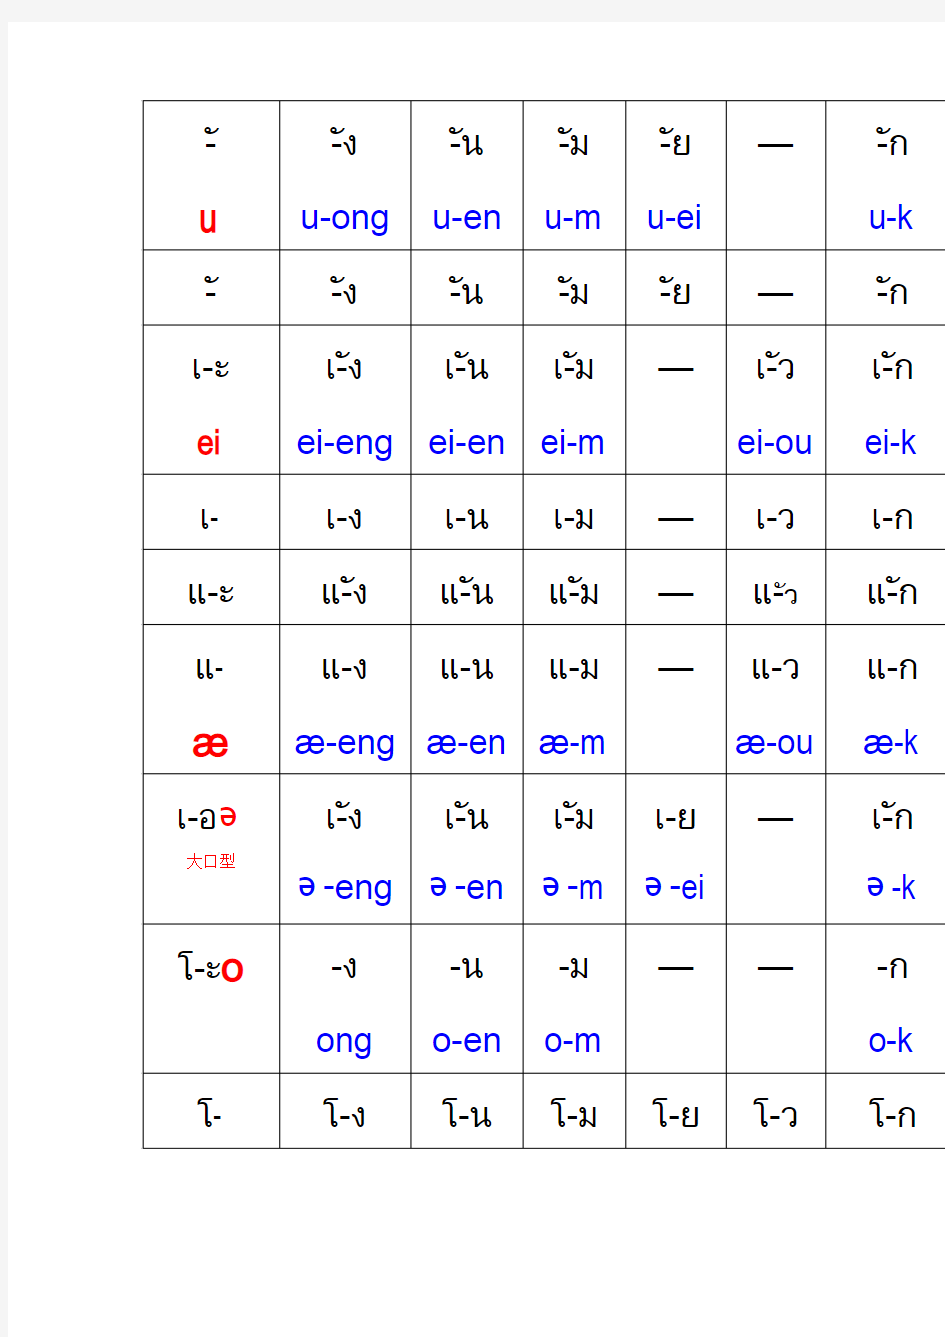 泰语清浊尾辅音拼音表